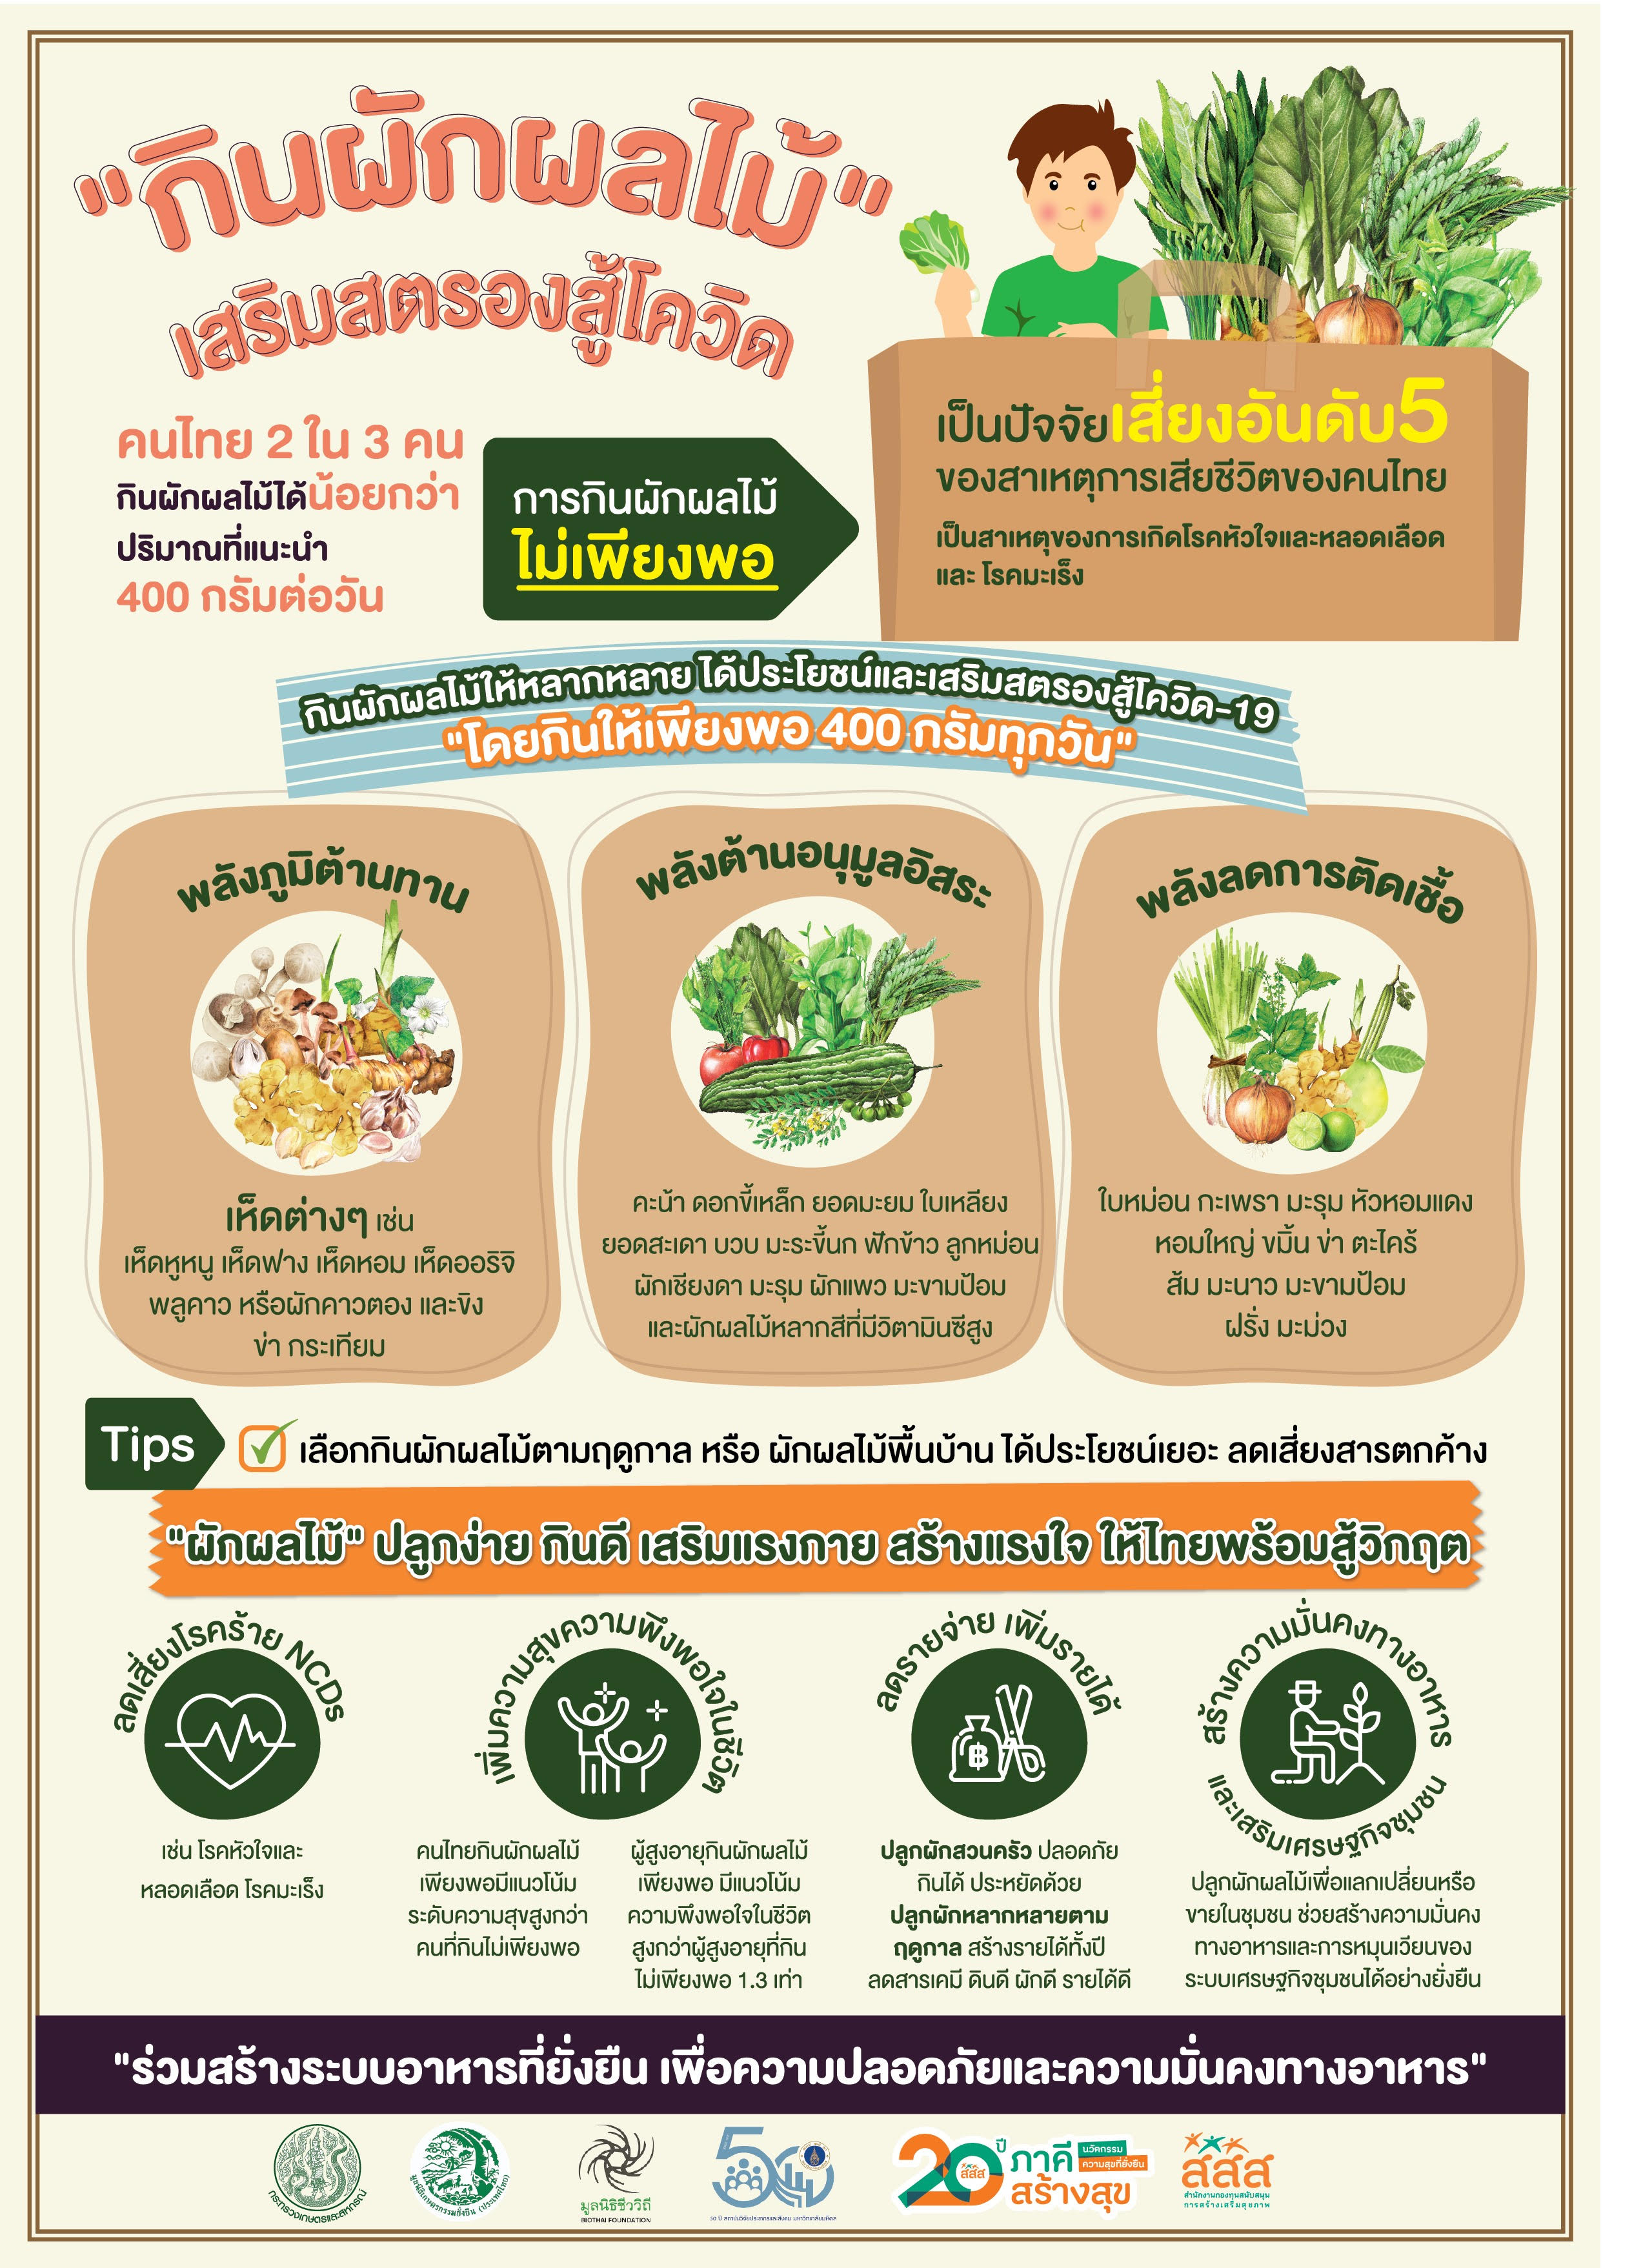 กินผักผลไม้_เสริมสตรองสู้โควิด thai-herbs.thdata.co | กินผักผลไม้_เสริมสตรองสู้โควิด สรรพคุณ สมุนไพร ไทย 